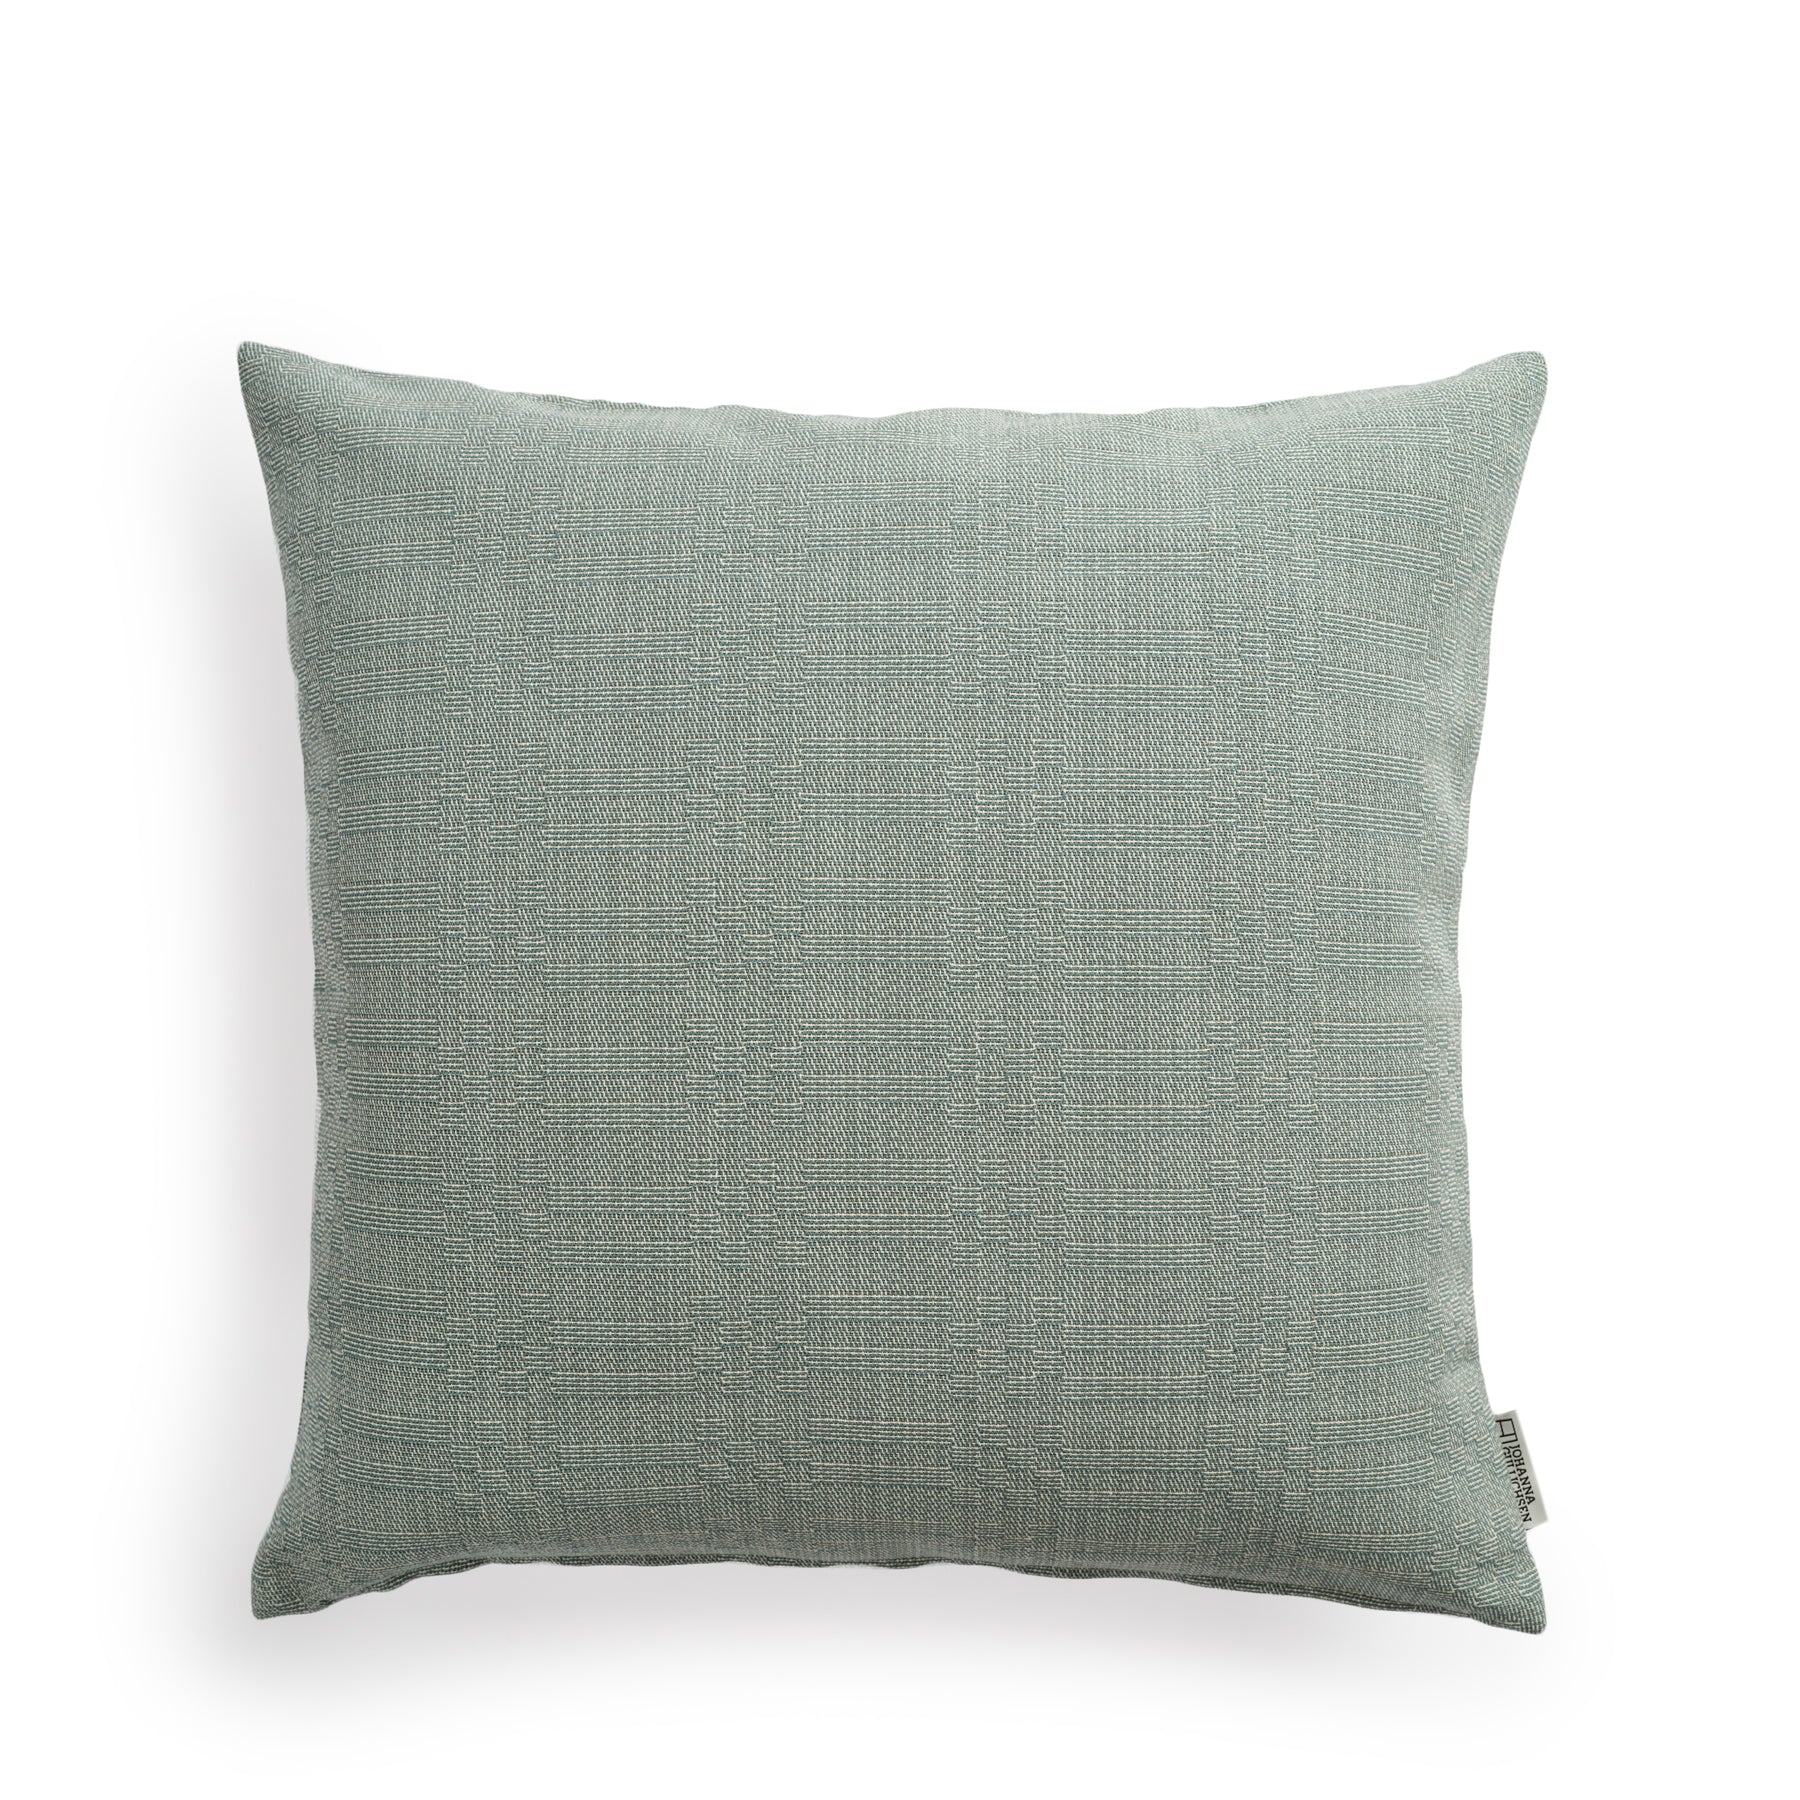 Selene Pillow in Green Zoom Image 1